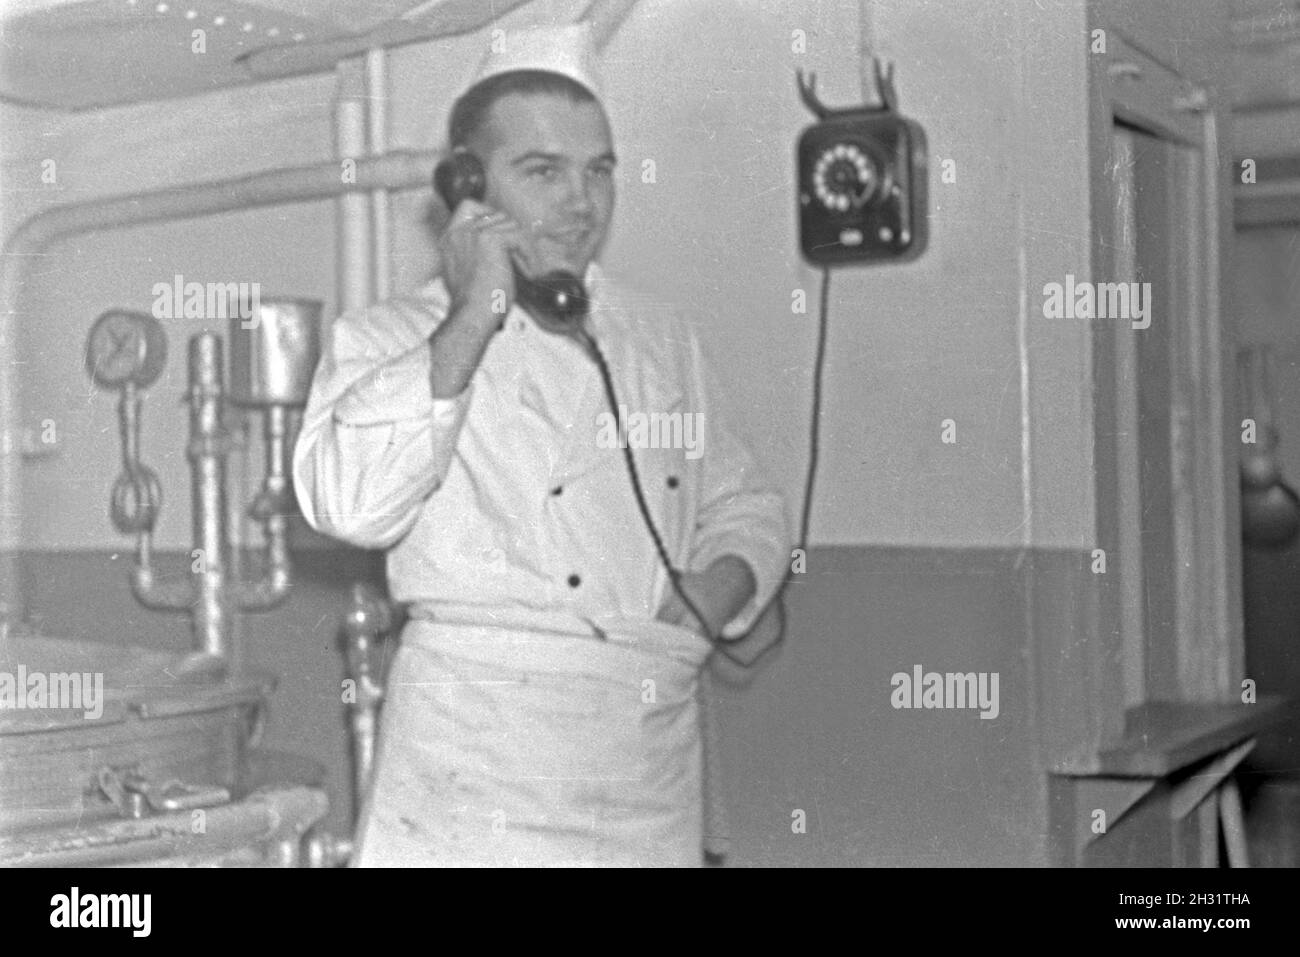 Anruf für den Schiffskoch des Walfangfabrikschiffs 'Jan Wellem', 1930er Jahr. Phonecall for the ship's cook of the factory vessel 'Jan Wellem', 1930s. Stock Photo